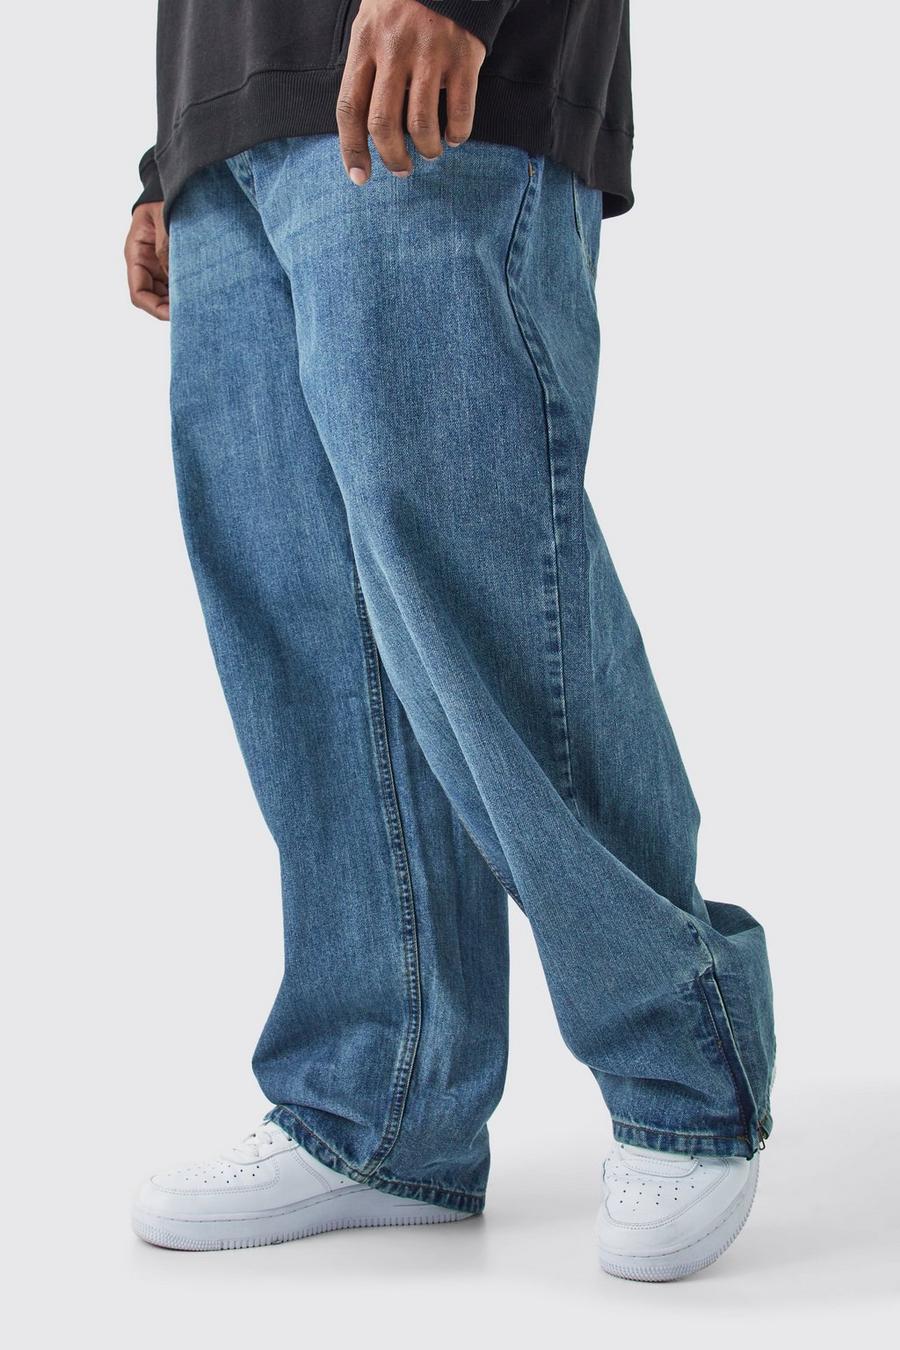 Grande taille - Jean large zippé, Antique blue